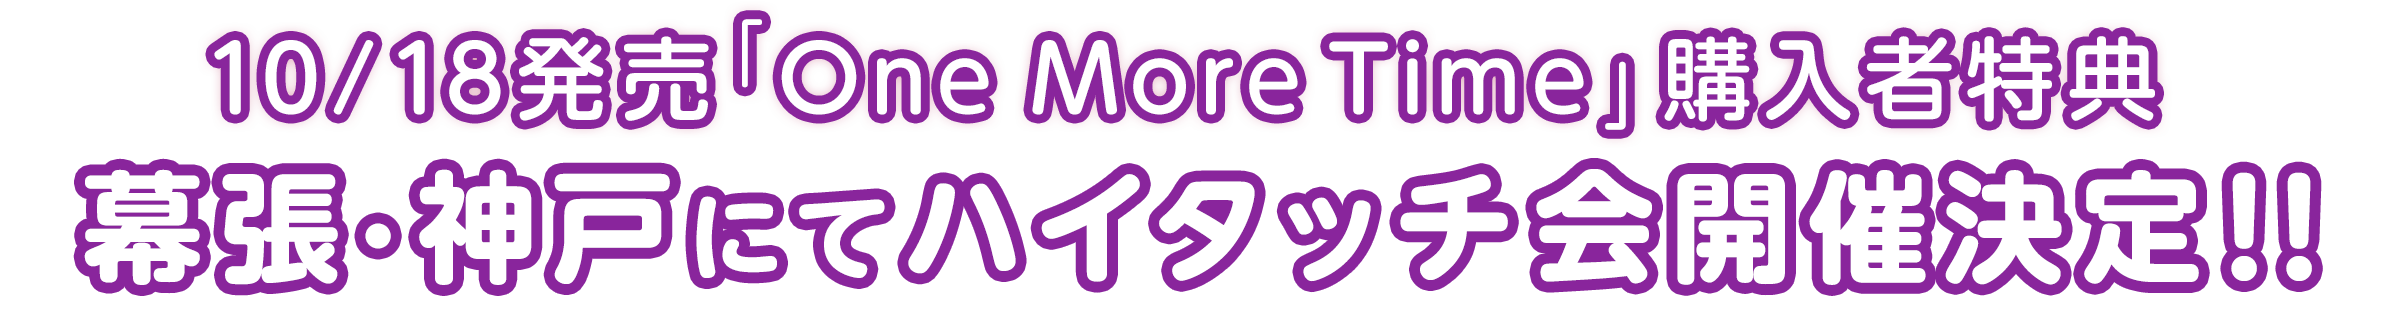 10/18発売「One More Time」購入者特典幕張・神戸にてハイタッチ会開催決定!!